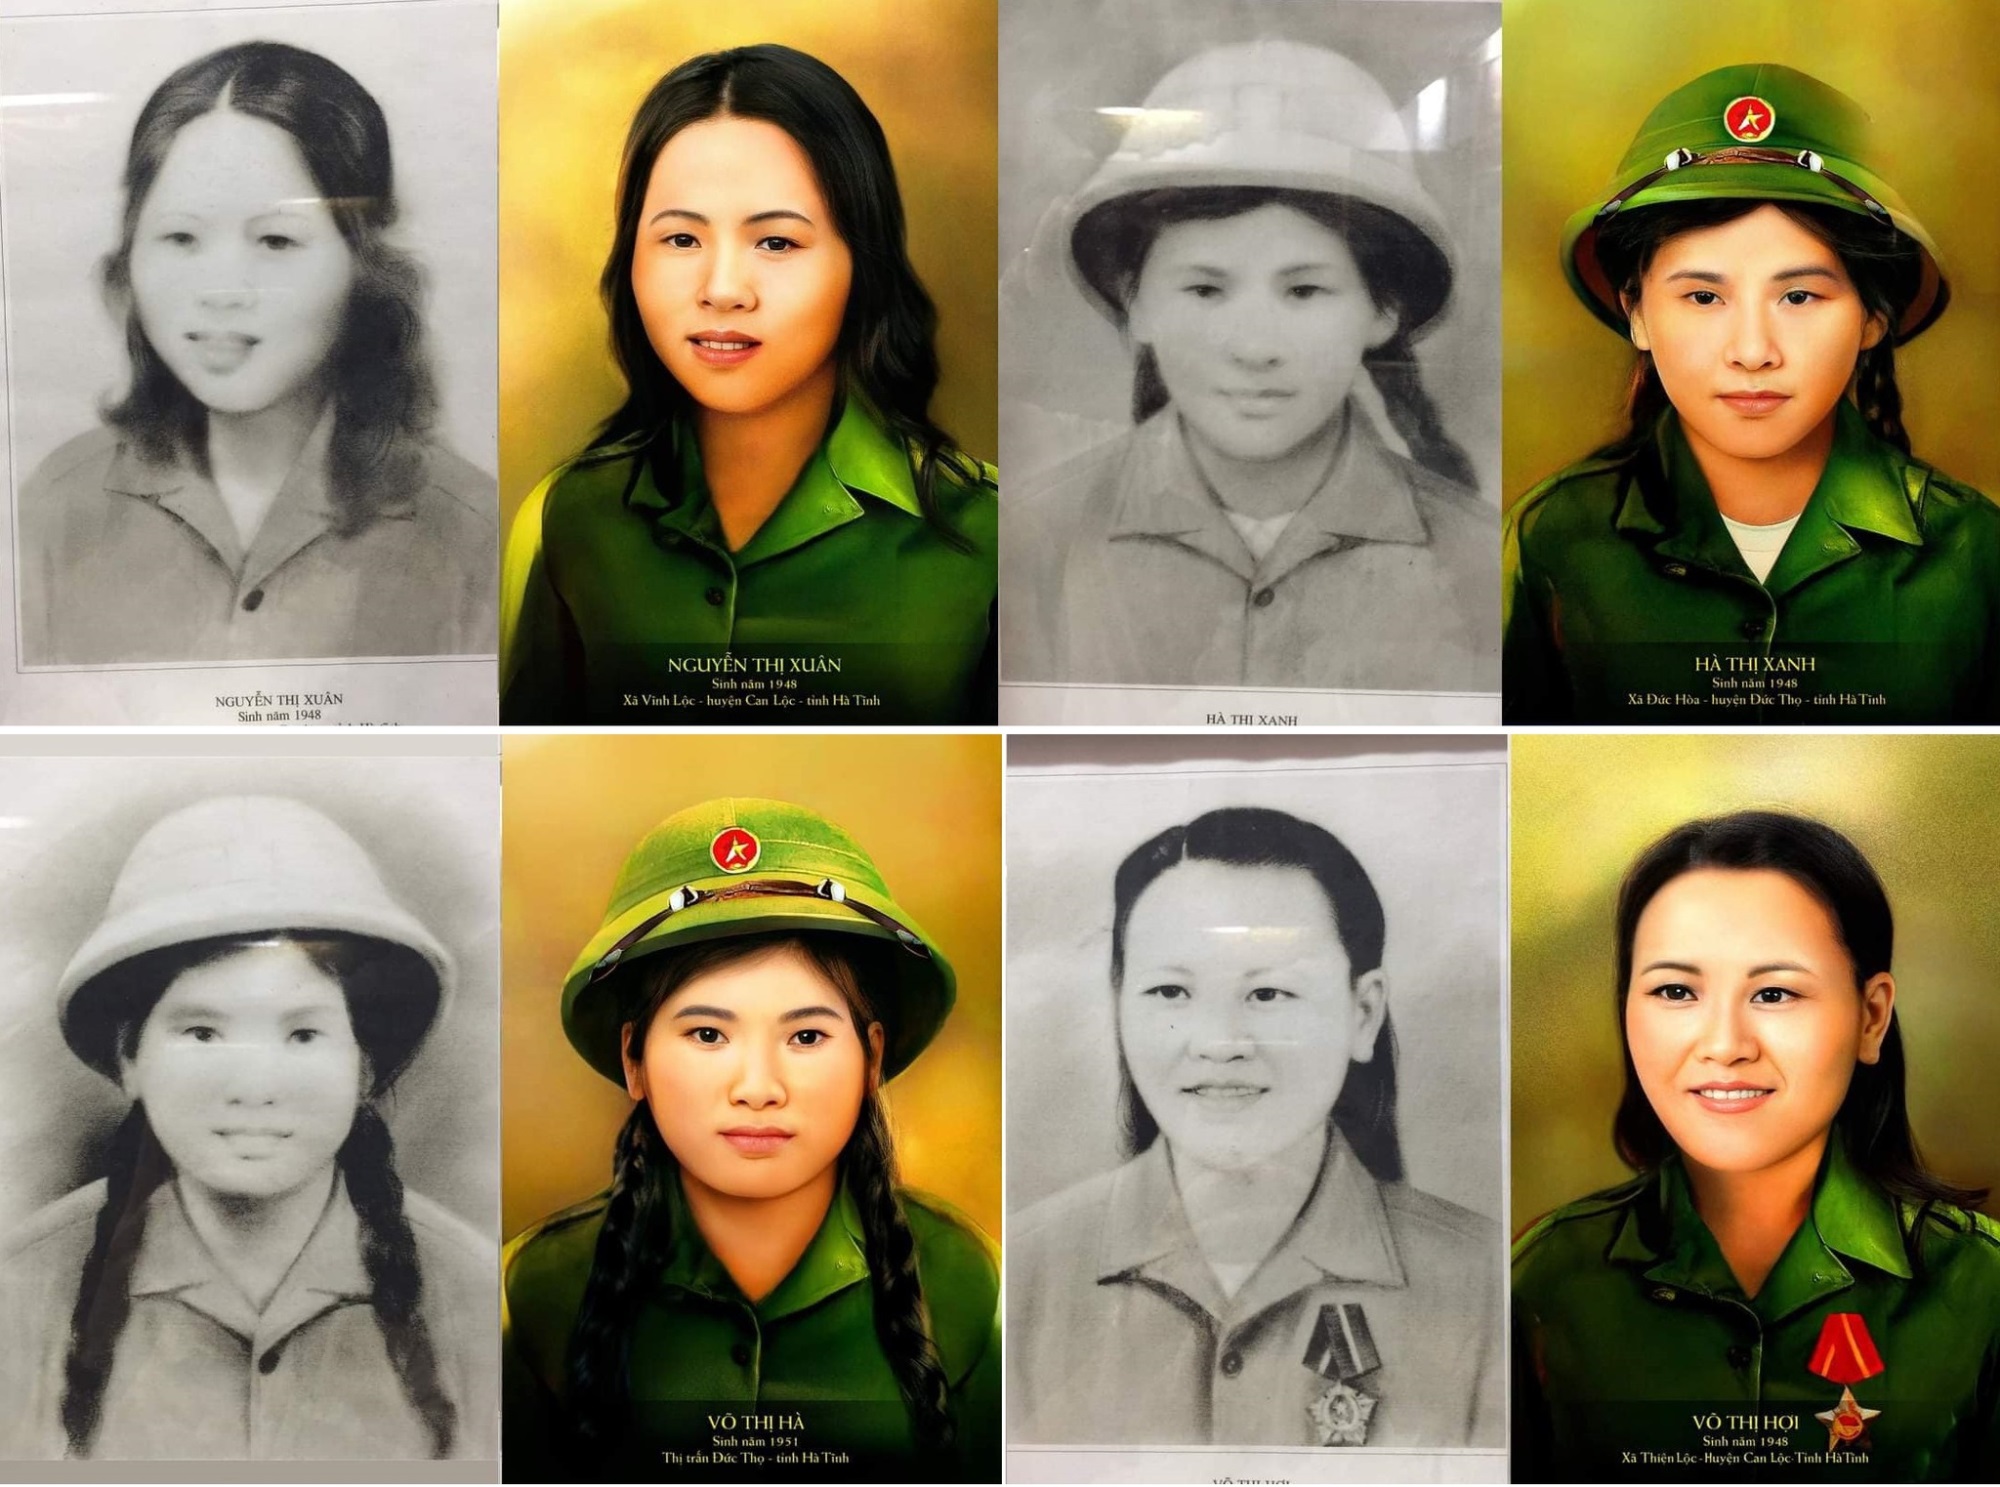 Mừng ngày Quốc khánh 2/9, nhóm thanh niên tâm huyết phục dựng chân dung 10 nữ thanh niên xung phong hi sinh ở Ngã ba Đồng Lộc đầy tỉ mỉ và chính xác - Ảnh 2